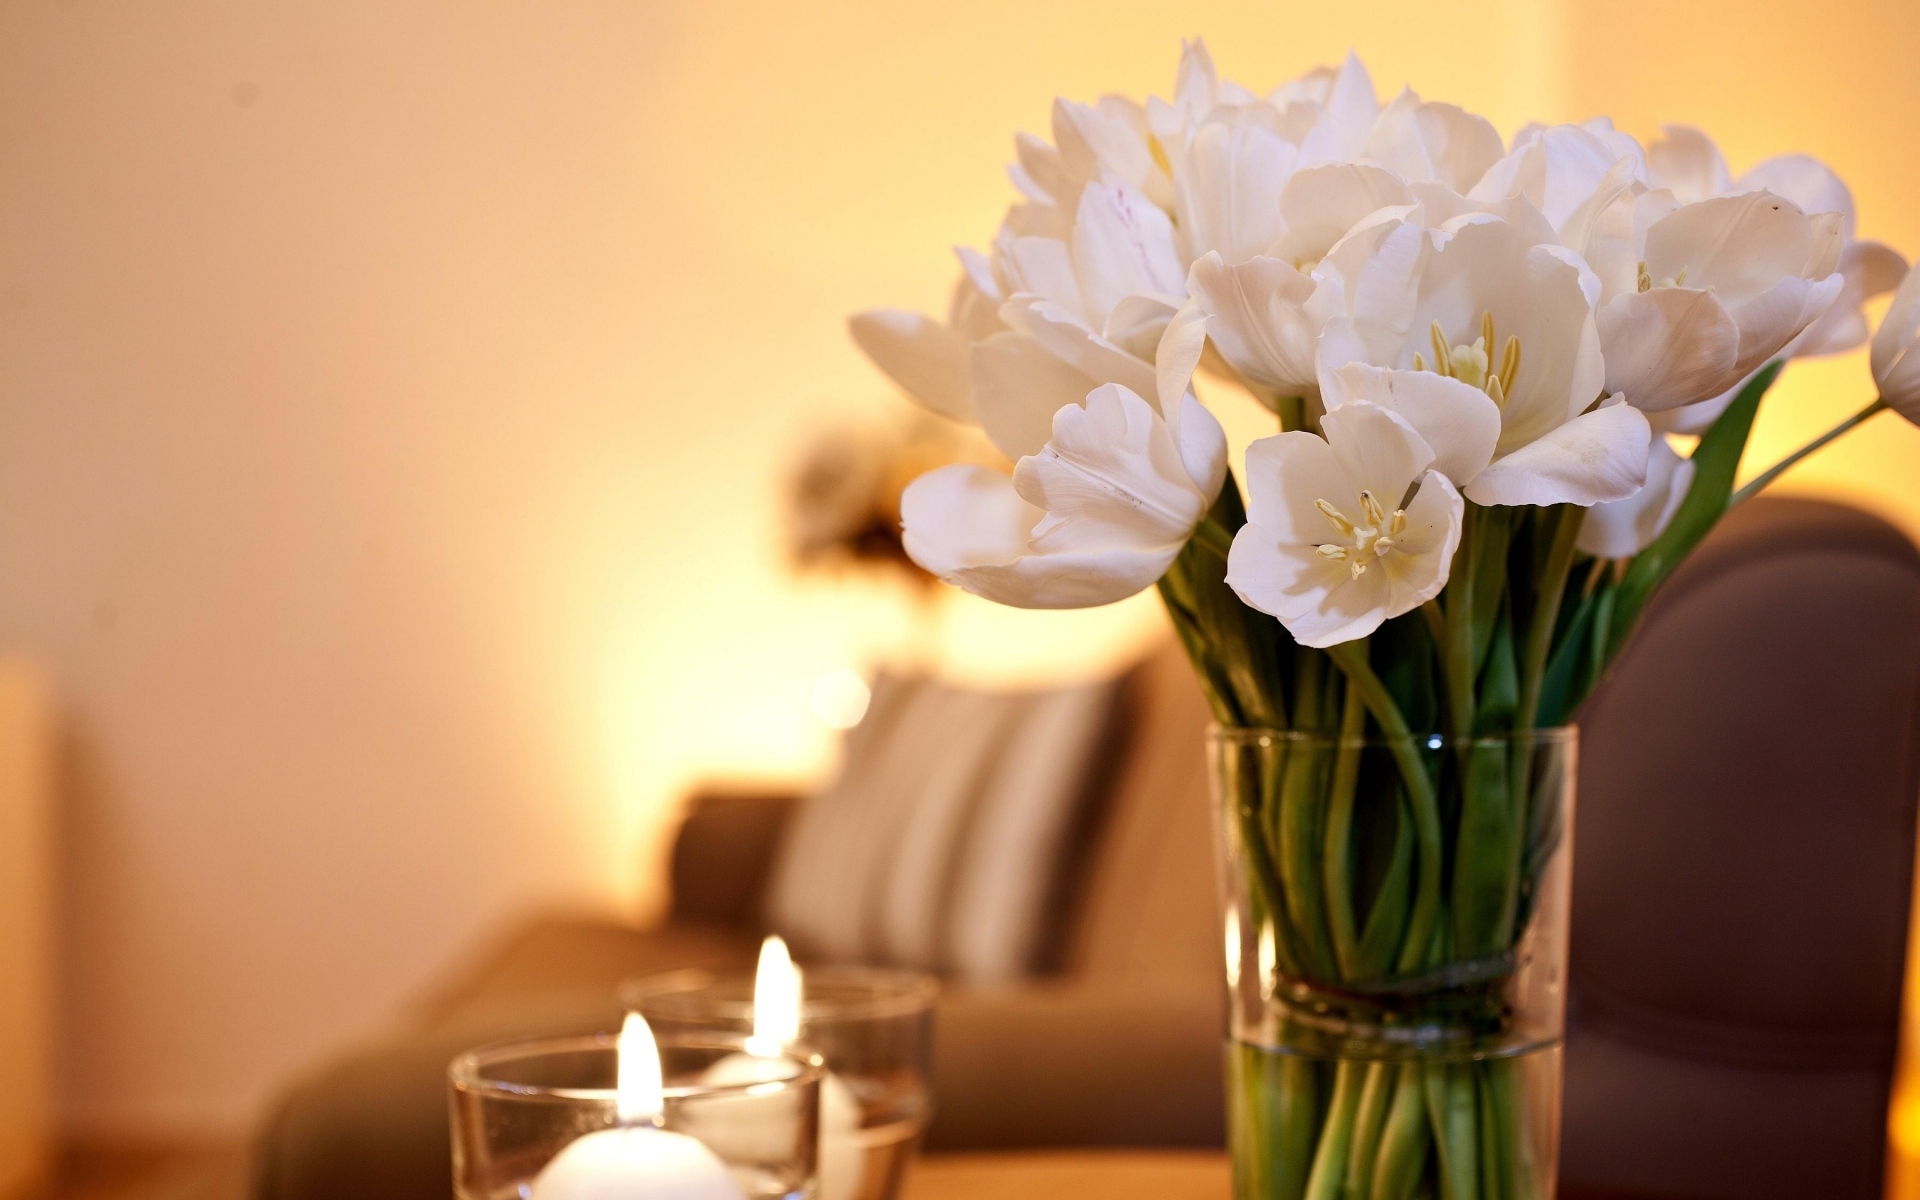 Картинки Тюльпаны, цветы, гроздь, ваза, свечи, романтика фото и обои на рабочий стол